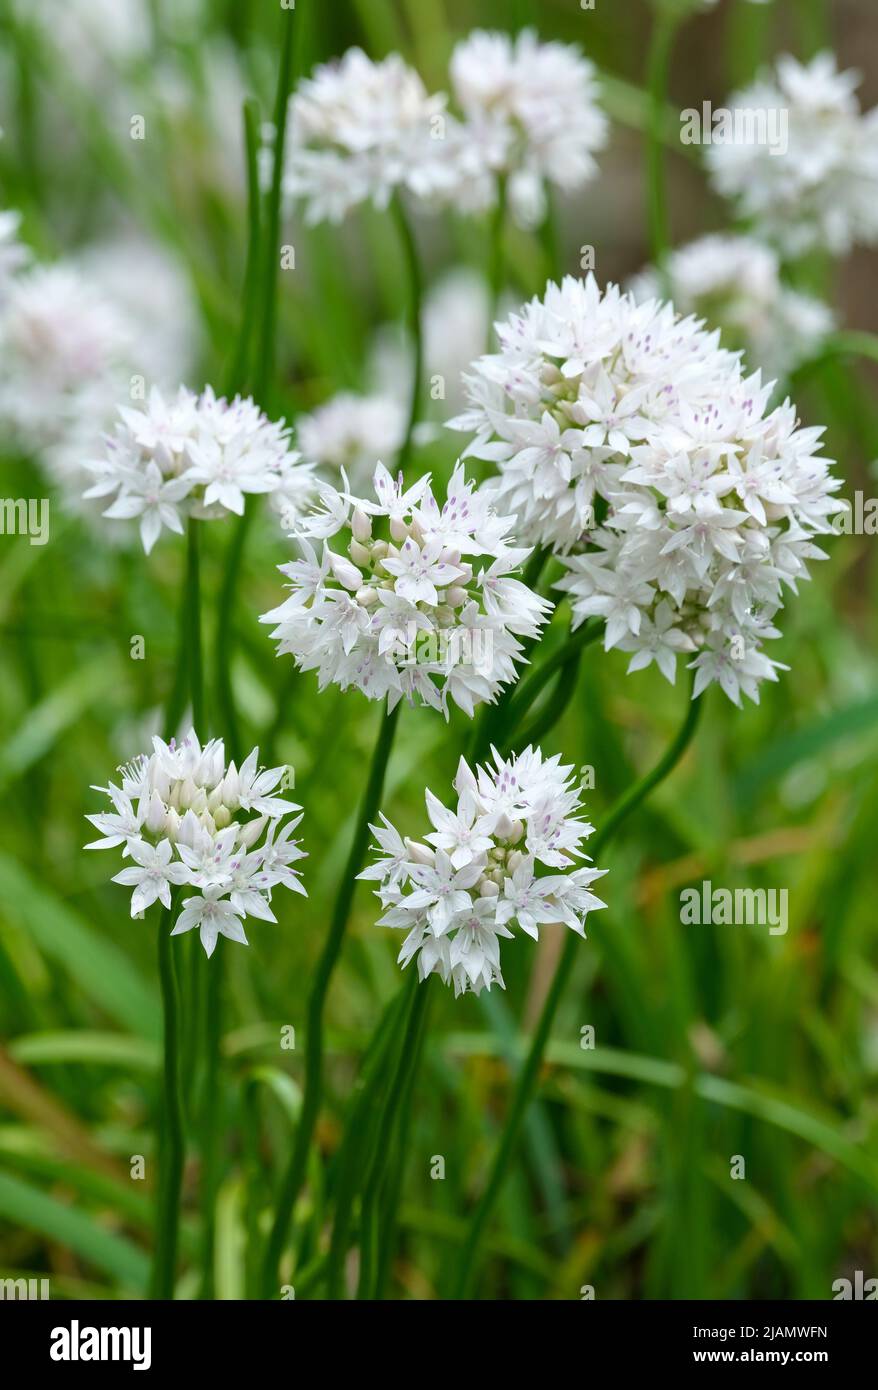 Allium amplectens 'Belleza elegante', Allium 'agraciada', cebolla de hoja estrecha 'Belleza agraciada'. Flores en forma de globo, flores blancas estrelladas con lavanda Foto de stock